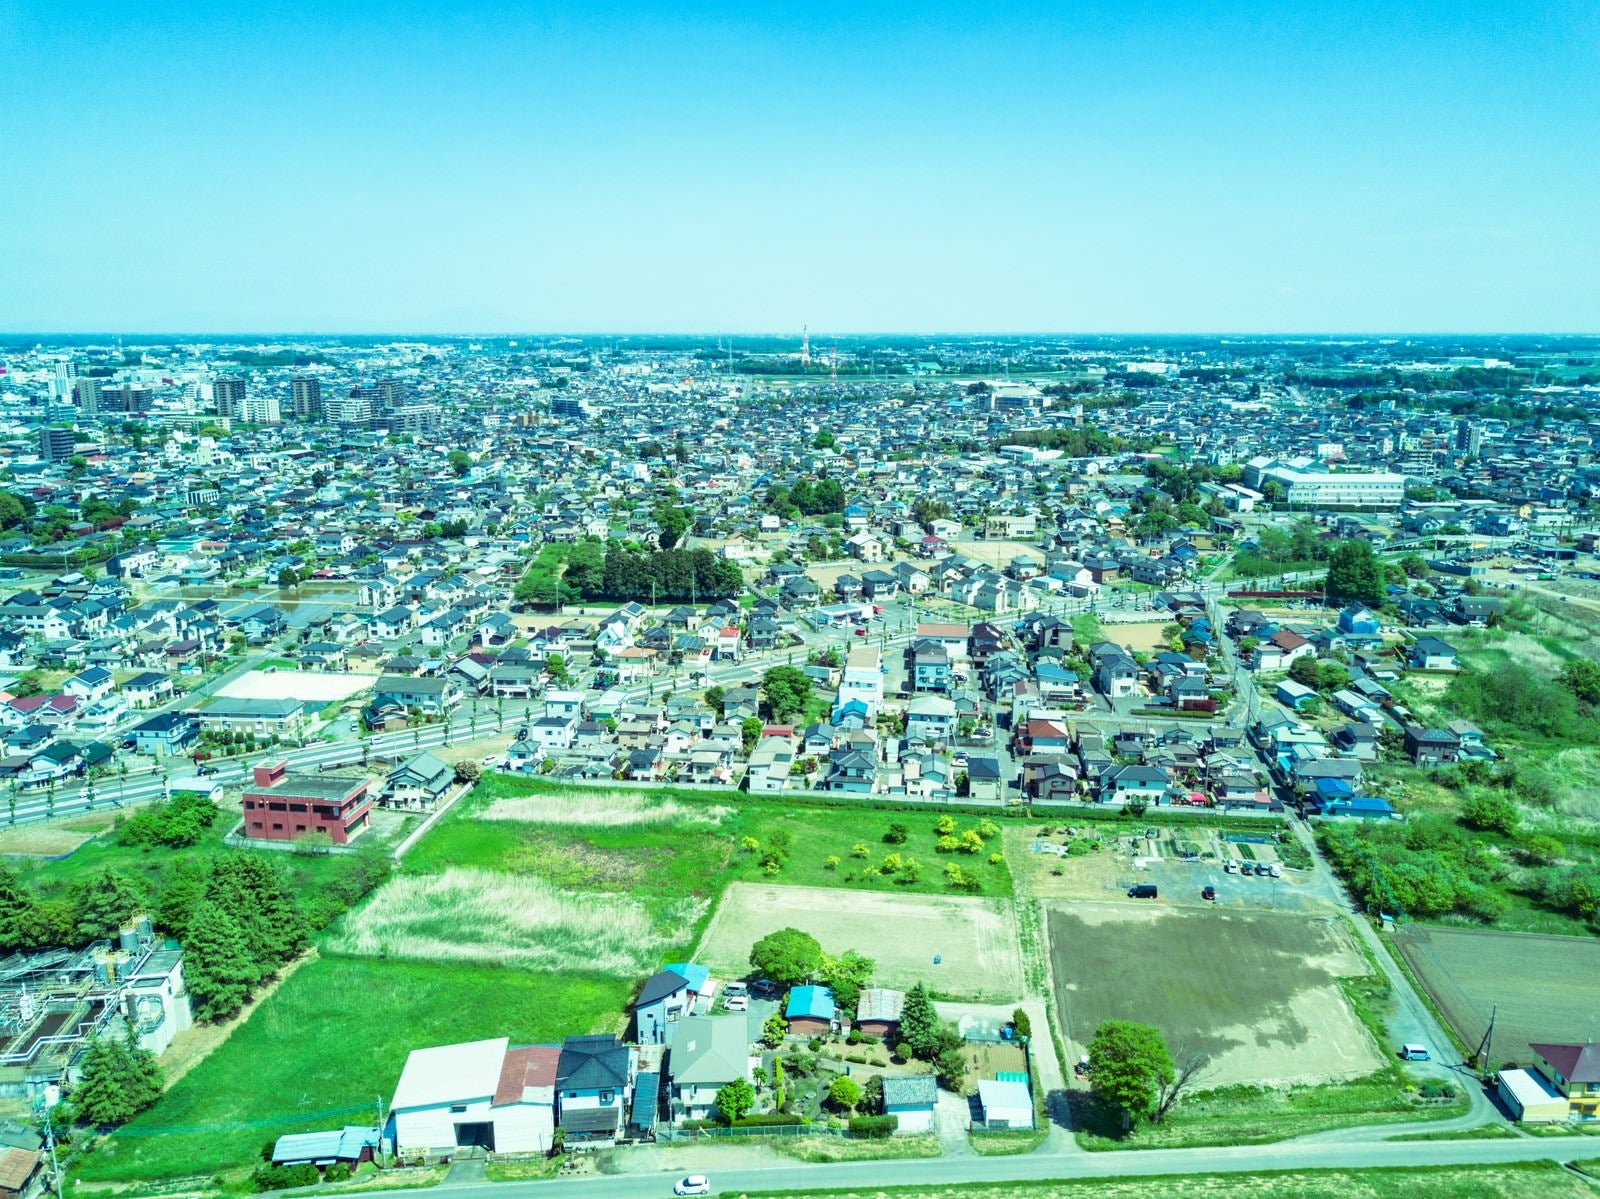 「上空100m付近の街並み」の写真